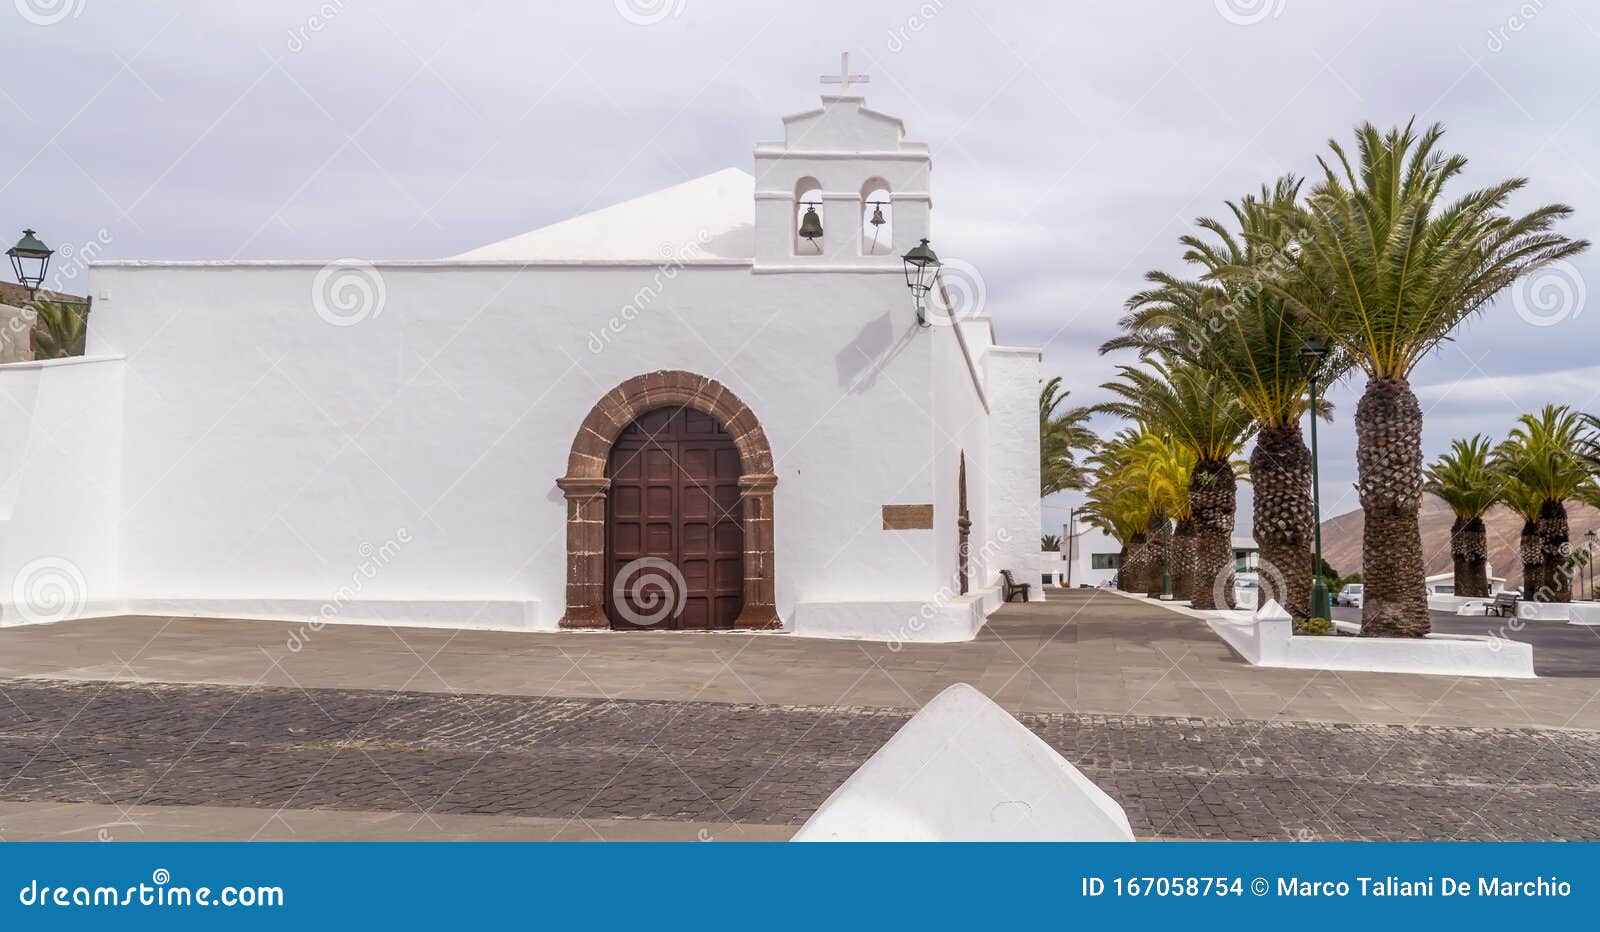 the beautiful ermita de san marcial de limoges or del rubicon church in femes, lanzarote, canary islands, spain